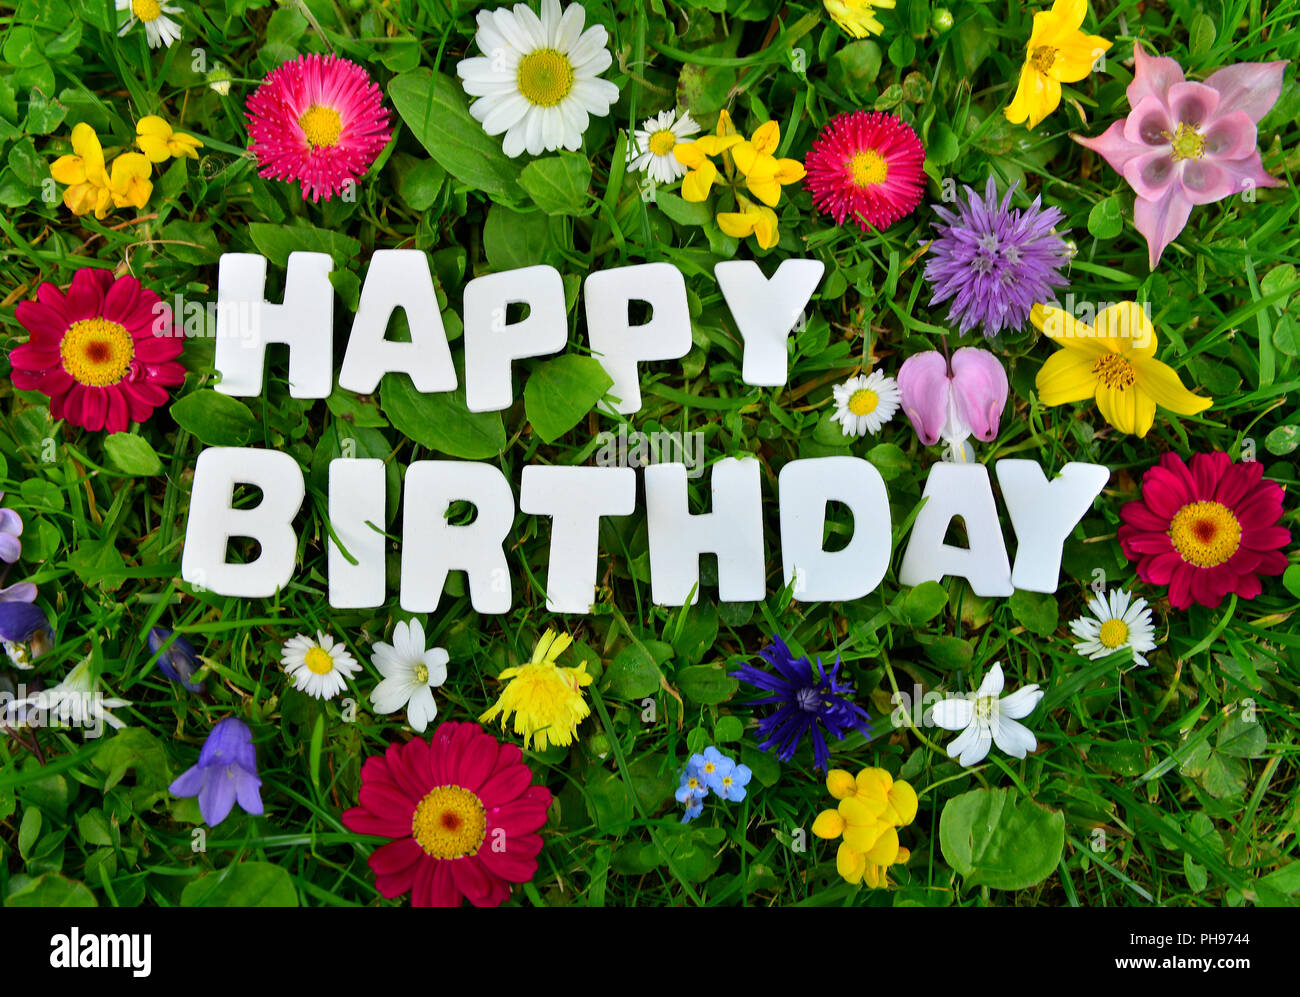 Happy Birthday text on flower meadow Stock Photo - Alamy